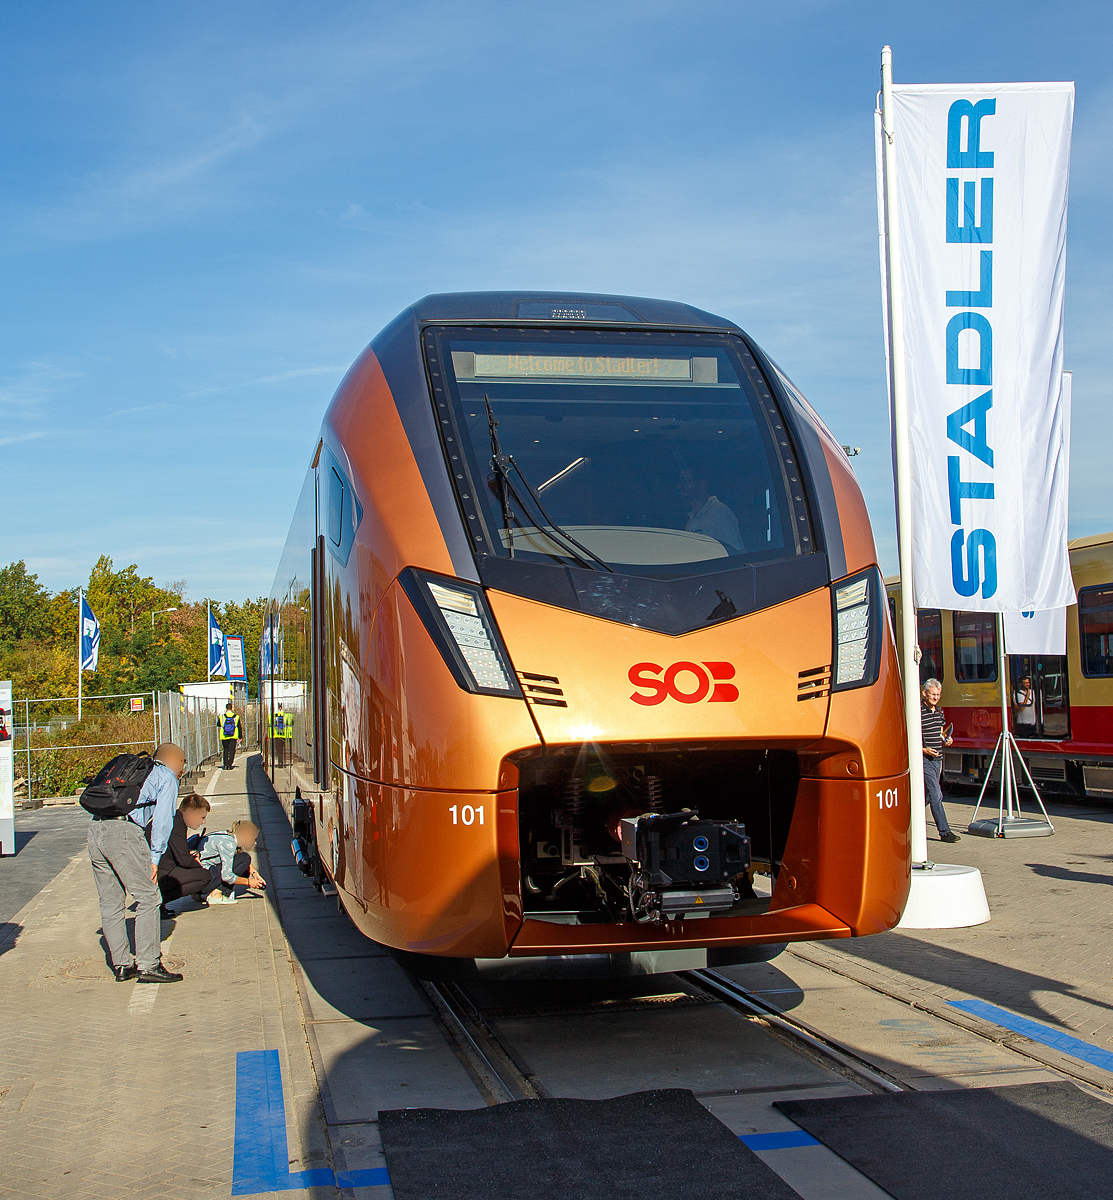 Stadler präsentierte auf der InnoTrans 2018 (hier 18.09.2018) in Berlin den neuen für die SOB (Südostbahn) bestimmten 8-teiligen elektrischen Stadler FLIRT 3 – Traverso (94 85 7 526 101-1 CH-SOB / 201-9).

Die Traverso FLIRT 3 Triebzüge sind für den Voralpen-Express und für den Treno Gottardo (Fernverkehr auf der Gotthard-Bergstrecke) vorgesehen, ab Dezember 2021 folg dann noch die Aare Linth (Bern–Zürich–Chur).

Die Schweizerische Südostbahn (SOB) hat bei Stadler 34 dieser neuen 8-teilige bzw. 4-teilige Triebzüge bestellt. Für den Intercityverkehr wurde der Traverso mit dem Intercity Frontdesign versehen. Die neuen Traverso weisen FLIRT-typische positive Merkmale auf: Stufenlose Eingänge, eine großzügige, übersichtliche Innenraumgestaltung, große Mehrzweckflächen in den Eingangsbereichen und Wagenkasten in Aluminium-Leichtbauweise, was zu deutlich tieferem Energieverbrauch und somit auch wesentlich tieferen Energiekosten führt. Besonderes Augenmerk wurde auf die innovative Fahrwerkstechnik gelegt, die für verschleißarmen Betrieb auf dem kurvenreichen Streckennetz der SOB sorgt. Die Formgebung der Deckenelemente führen im Zusammenspiel mit dem Beleuchtungskonzept zu einer außergewöhnlich hochwertigen Erscheinung des Interieurs.

Die Bedürfnisse der unterschiedlichen Benutzergruppen Pendler, Touristen und Wochenendausflügler, wurden bei der Entwicklung berücksichtigt: Pendler finden Raum, wo sie in Ruhe arbeiten können. Touristen und Wochenendausflügler genießen die fantastische Aussicht aus den Panoramafenstern, können Skier und Fahrräder deponieren und sich in den zwei Cateringzonen verpflegen. Für Familien steht ein eigener Familienbereich zur Verfügung.

Die Traverso FLIRT 3 besitzen automatische Kupplungen  und verfügen über eine Vielfachsteuerung mit 3 Zügen. Sie haben luftgefederte Trieb- und Laufdrehgestelle. Die Triebzüge haben einen passagierfreundlichen Innenraum mit individueller Gestaltungsmöglichkeit und voll Durchgängigkeit des Passagierraums. Sie besitzen 8 Einstiegstüren bei den 8-teiligen Fahrzeugen bzw. 4 Einstiegtüren beim 4-teiligen Zug pro Seite für schnellen Fahrgastwechsel.

TECHNISCHE DATEN der 8-Teiler, (in Klammern der 4-Teiler):
Spurweite:  1.435 mm (Normalspur)
Achsanordnung: Bo'2'2'2Bo' + Bo'2'2'2 Bo'   /   (Bo'2'2'2 Bo')
Länge über Kupplung: 150.200 mm   /   (77.100 mm)
Fahrzeugbreite: 2.820 mm 
Fahrzeughöhe: 4.120 mm 
Achsabstand im Drehgestell: 2.700 mm 
Triebraddurchmesser, neu:  870 mm 
Laufraddurchmesser, neu: 760 mm 
Fußbodenhöhe Niederflur am Einstieg: 600 mm 
Fußbodenhöhe Hochflur: 1.145 mm 
Einstiegbreite: 1.300 mm
Dauerleistung am Rad: 4.000 kW   /   (2.000 kW)
Max Leistung am Rad: 5.200 kW   /   (2.600 kW)
Anfahrzugskraft bis 47km/h: 400 kN   /   (200 kN)
Anfahrbeschleunigung: 1,1 m/s² 
Höchstgeschwindigkeit:160 km/h
Sitzplätze: 359   /   (197)
Klappsitze: 21   /   (10)
Stehplätze bei 4 Pers./m²: 485   /   (225)
Speisespannung: 15 kV AC, 16.7 Hz
